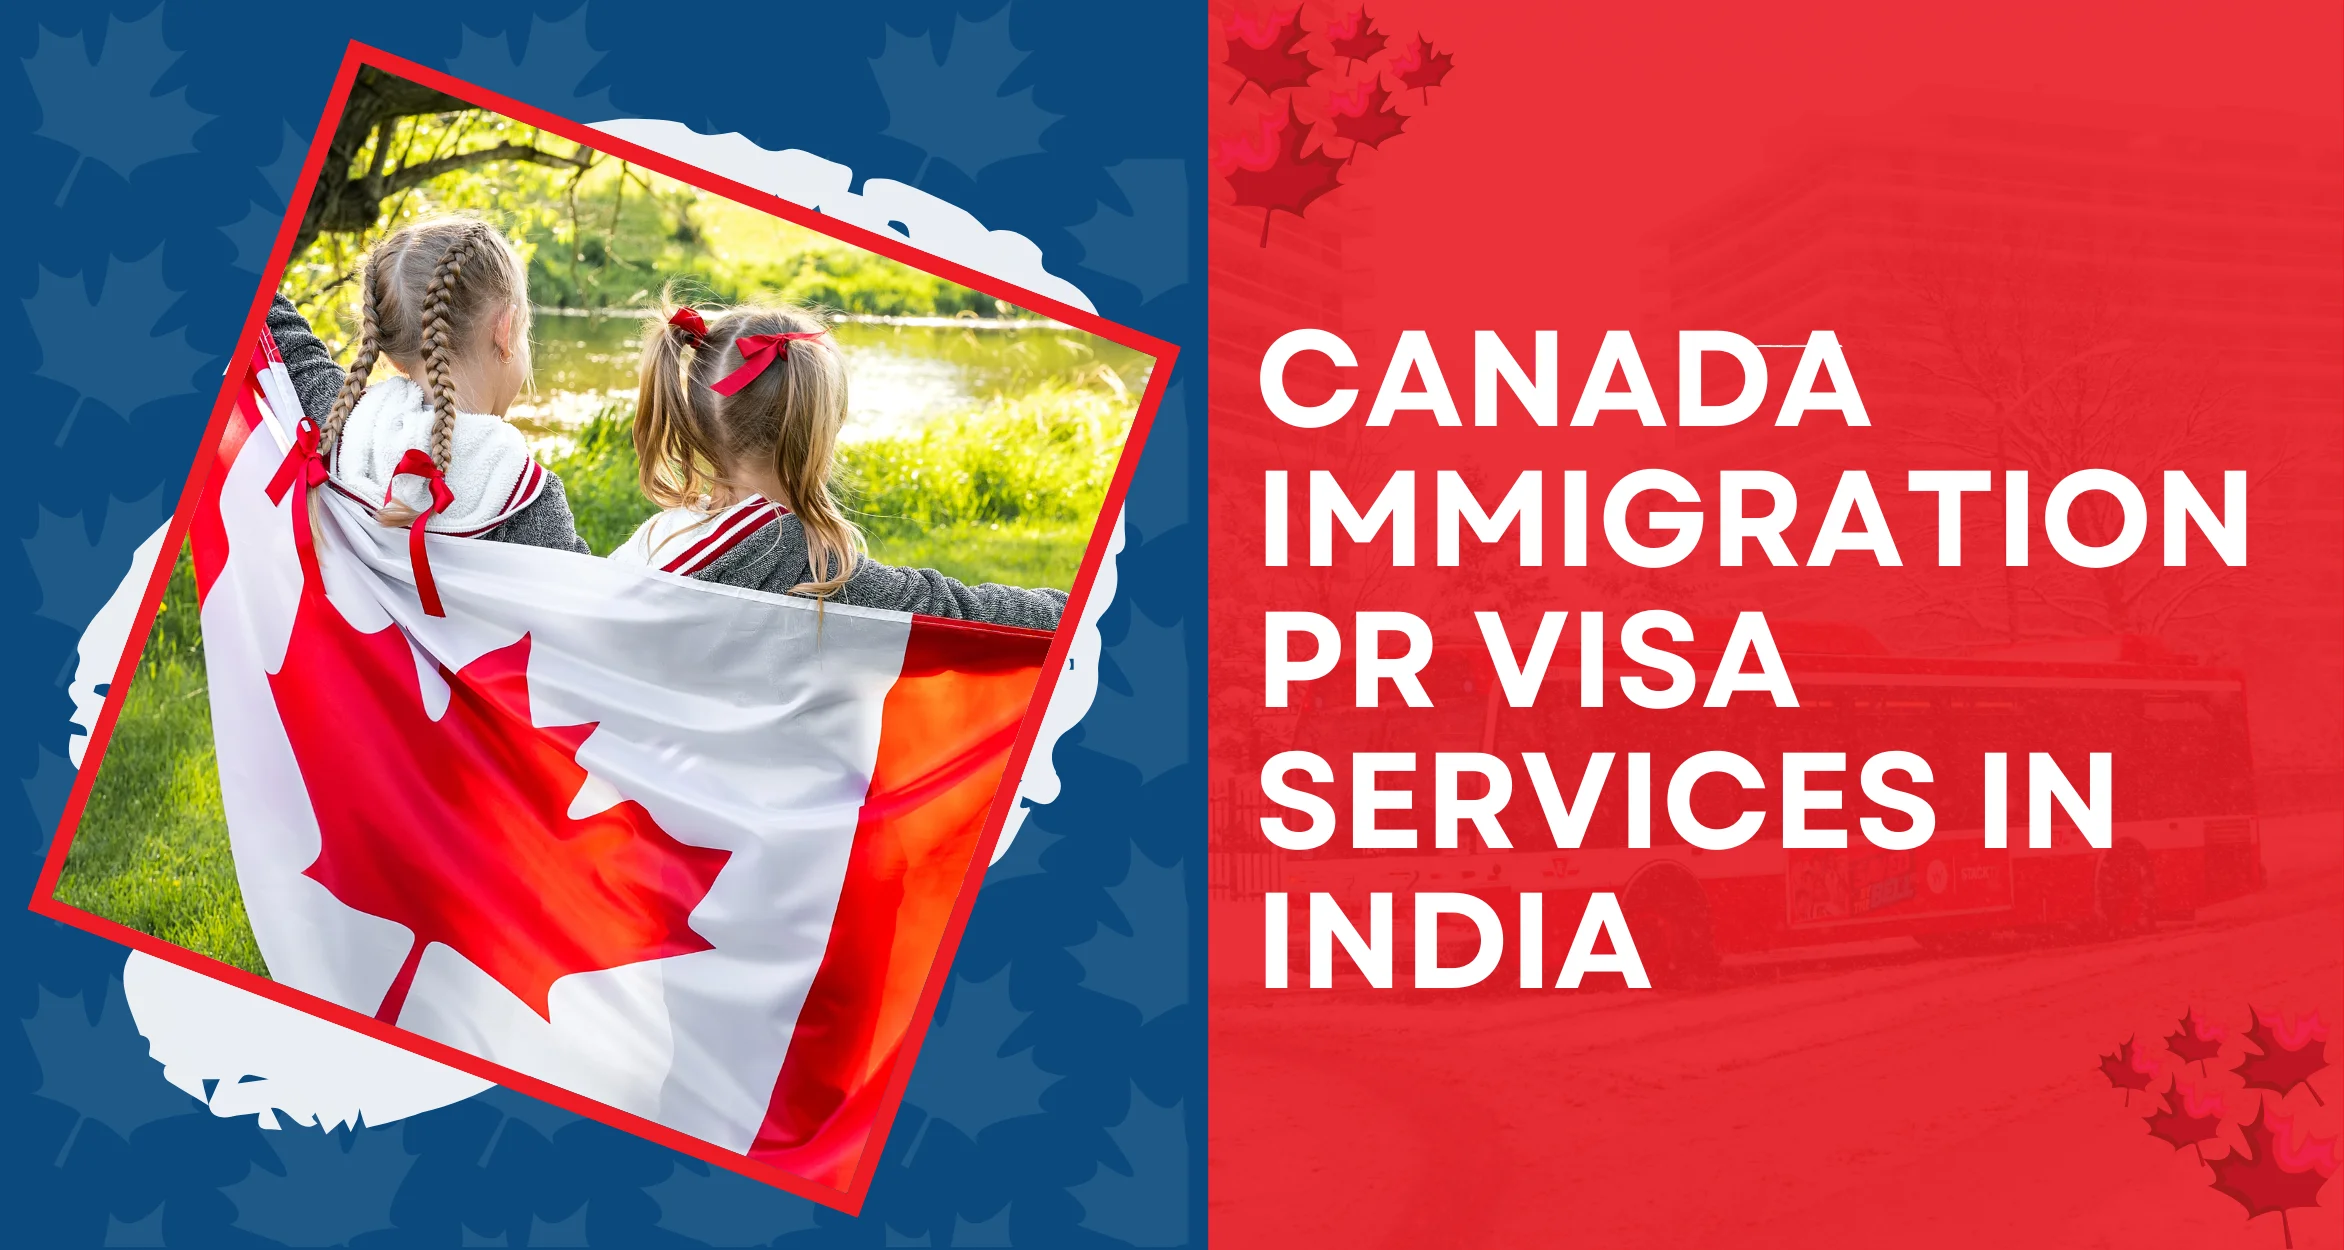 Canada Immigration PR Visa services in India